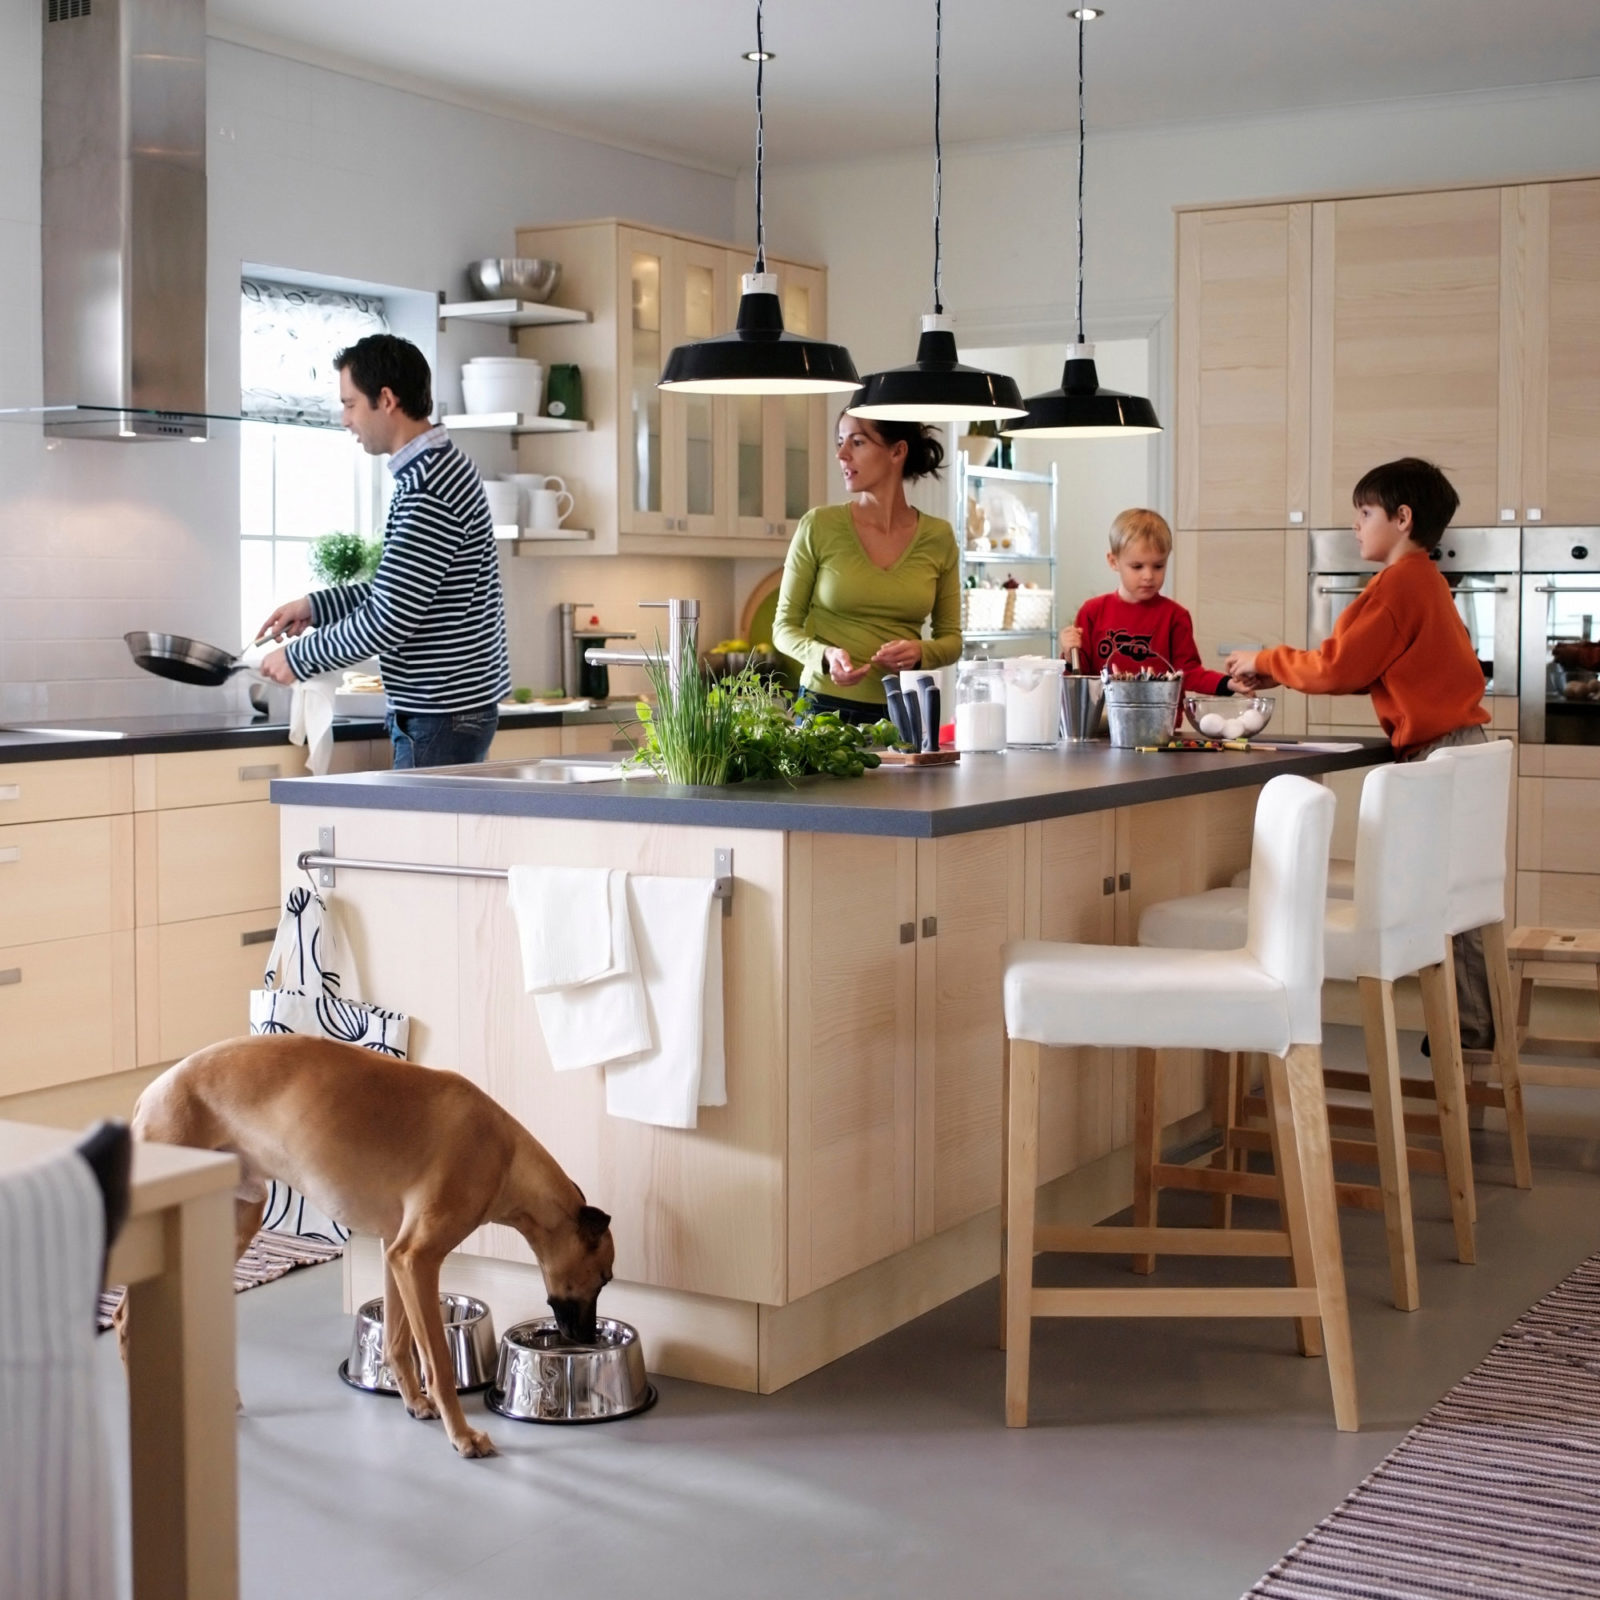 Un hombre, una mujer, dos niños y un perro alrededor de una isla de cocina con taburetes. Cocina de madera clara.